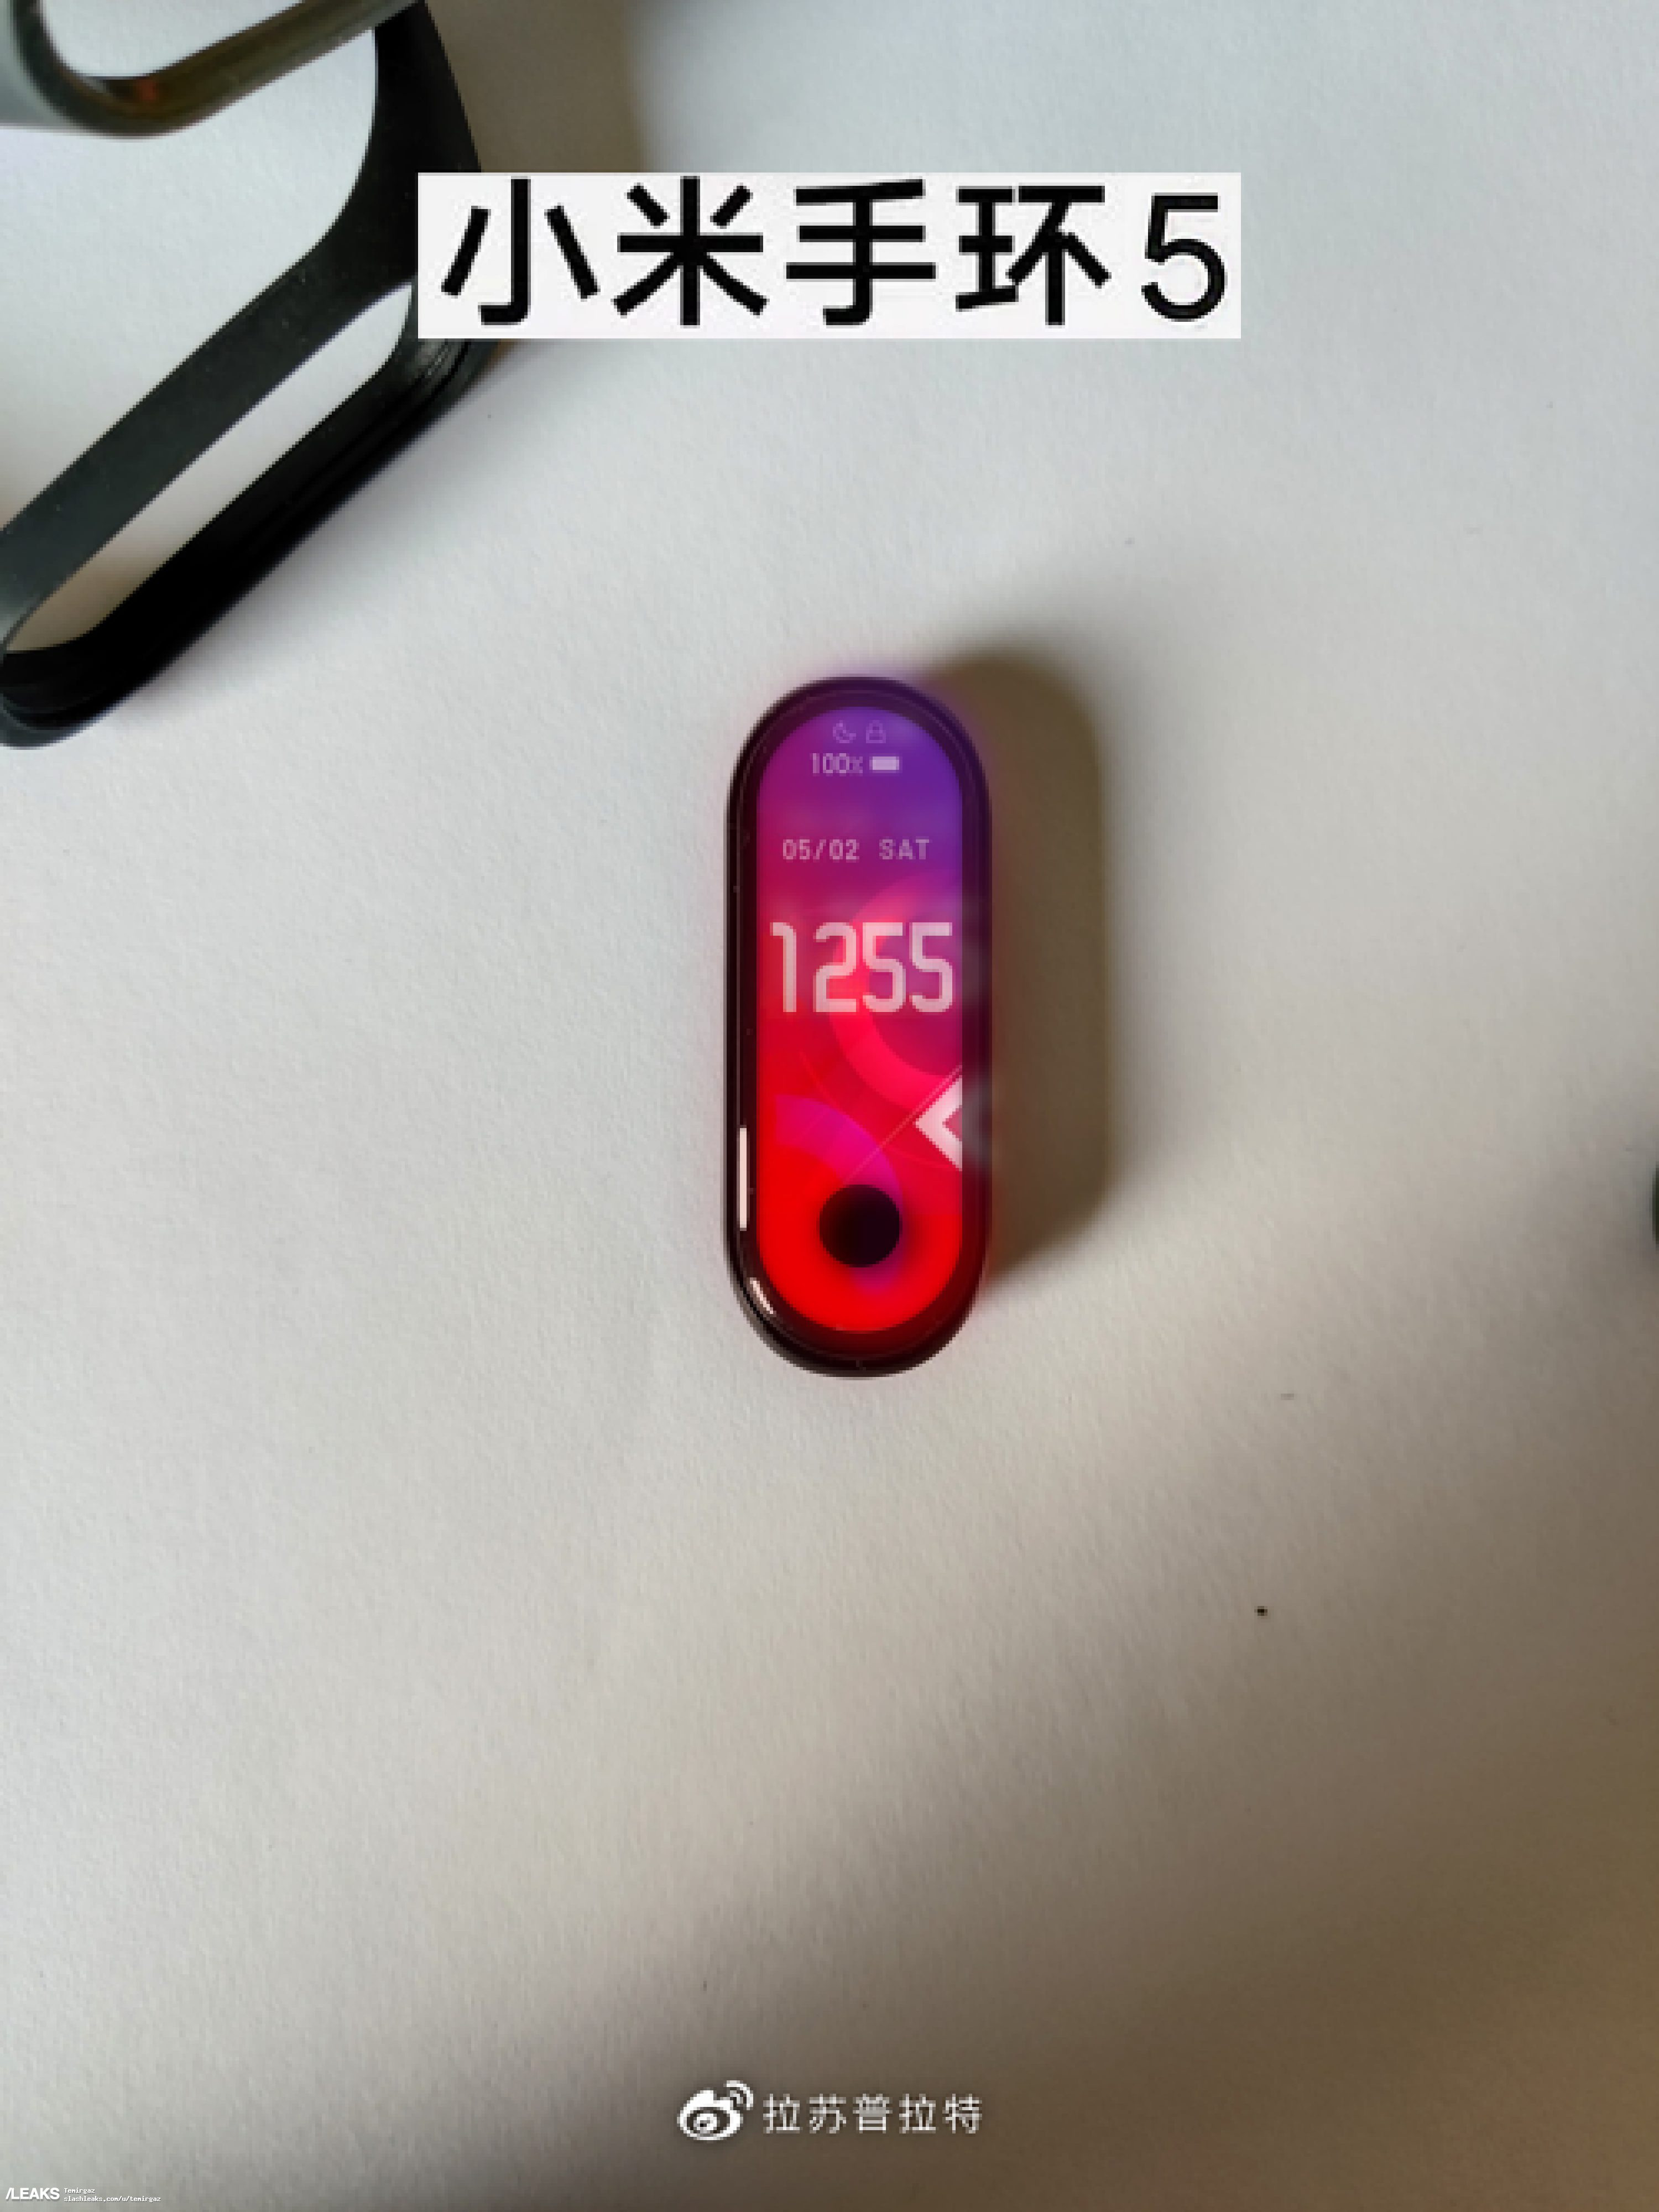 opaska Xiaomi Mi Band 5 zdjęcia plotki przecieki wycieki kiedy premiera